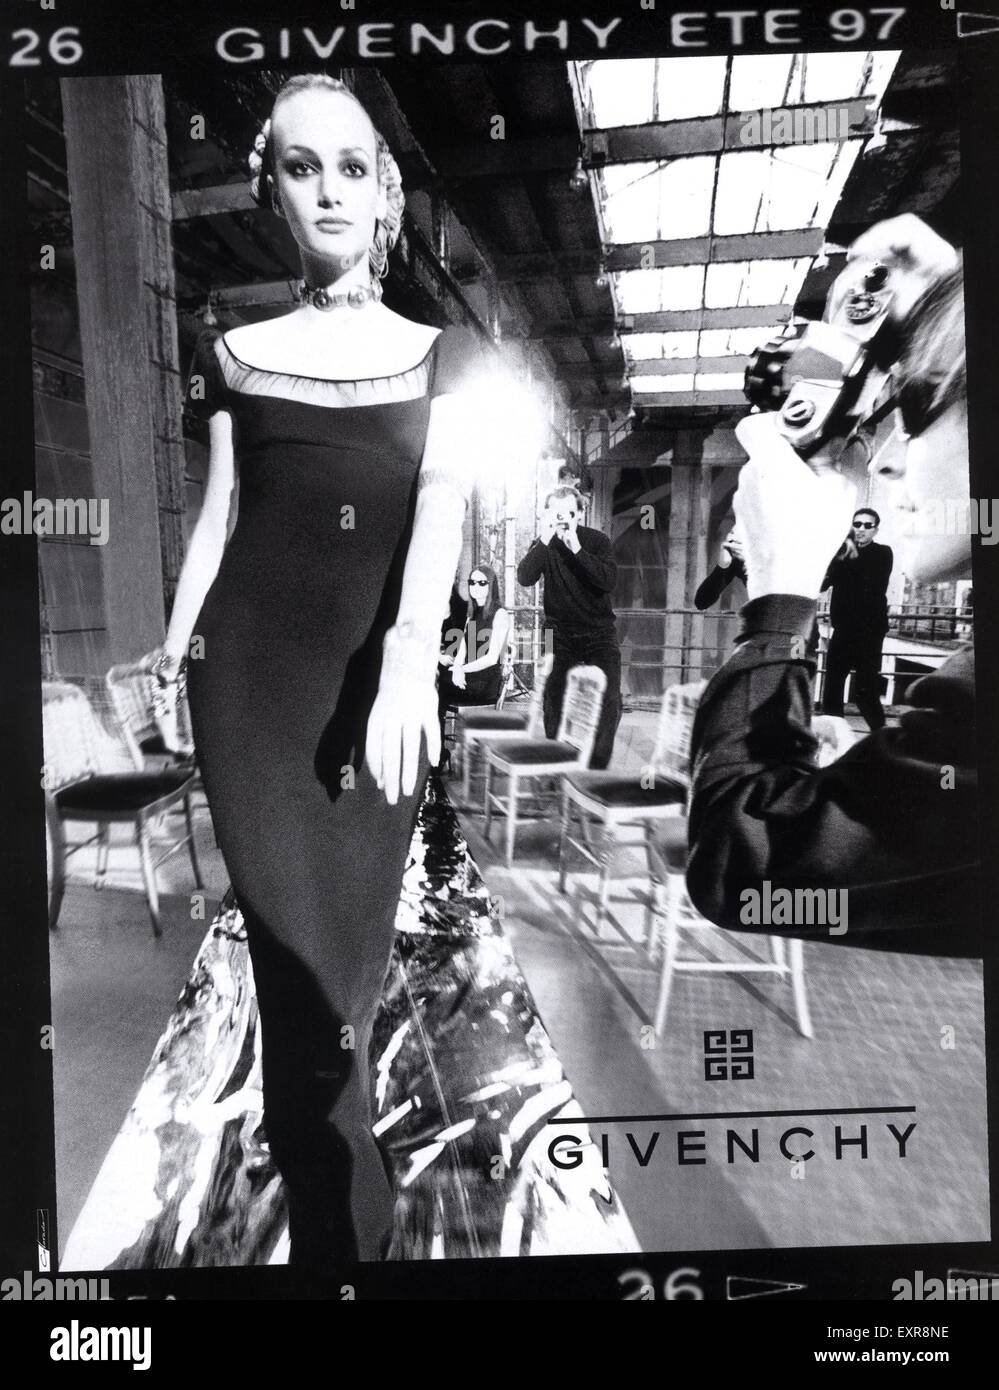 1990s UK Givenchy Magazine Advert Stock Photo